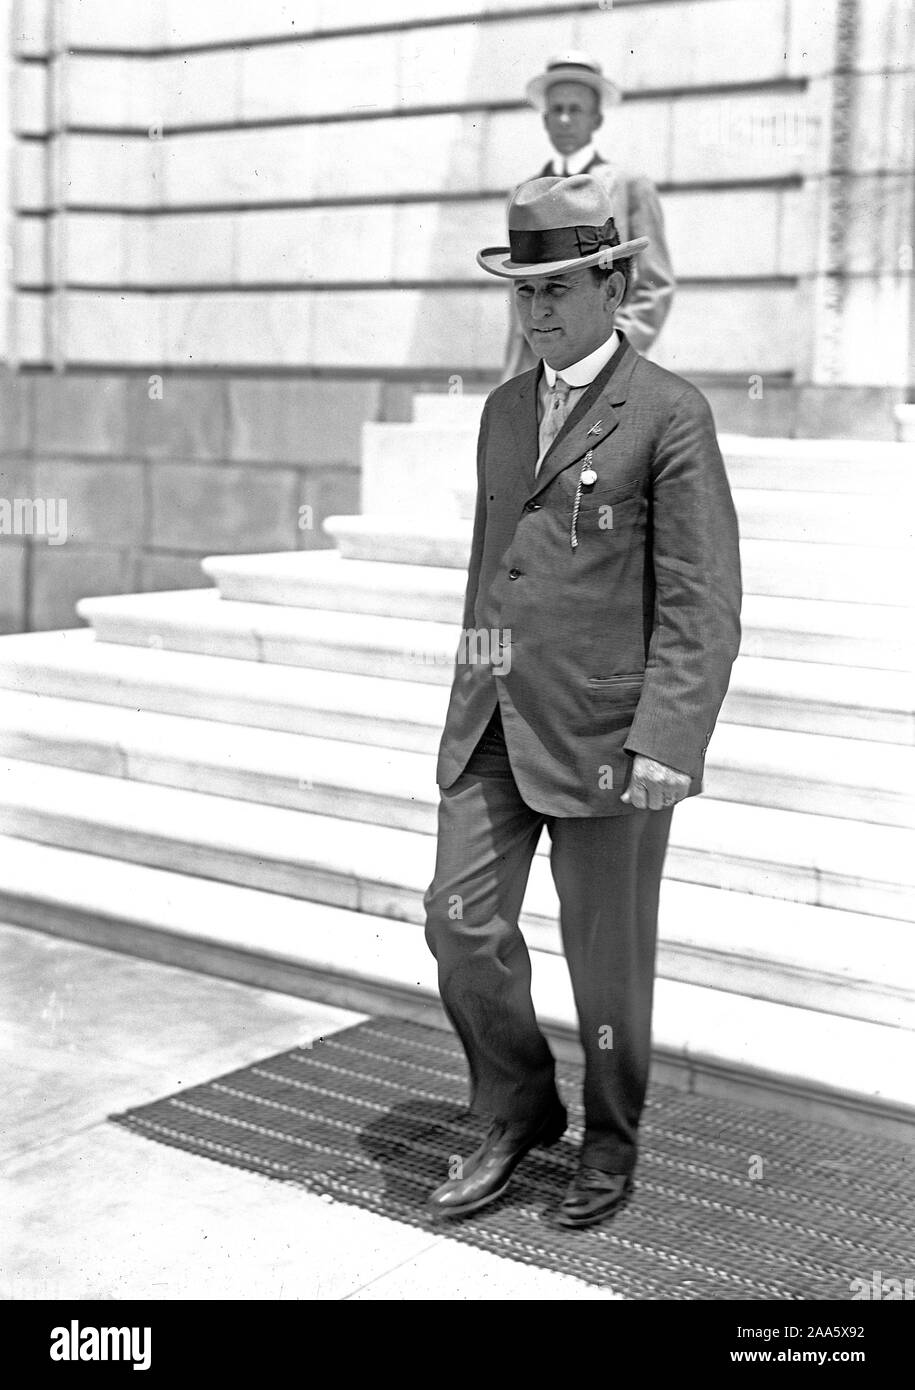 Début des années 1900, les politiciens américains - Etats-Unis Le sénateur Joseph T. Robinson ca. 1913-1917 Banque D'Images